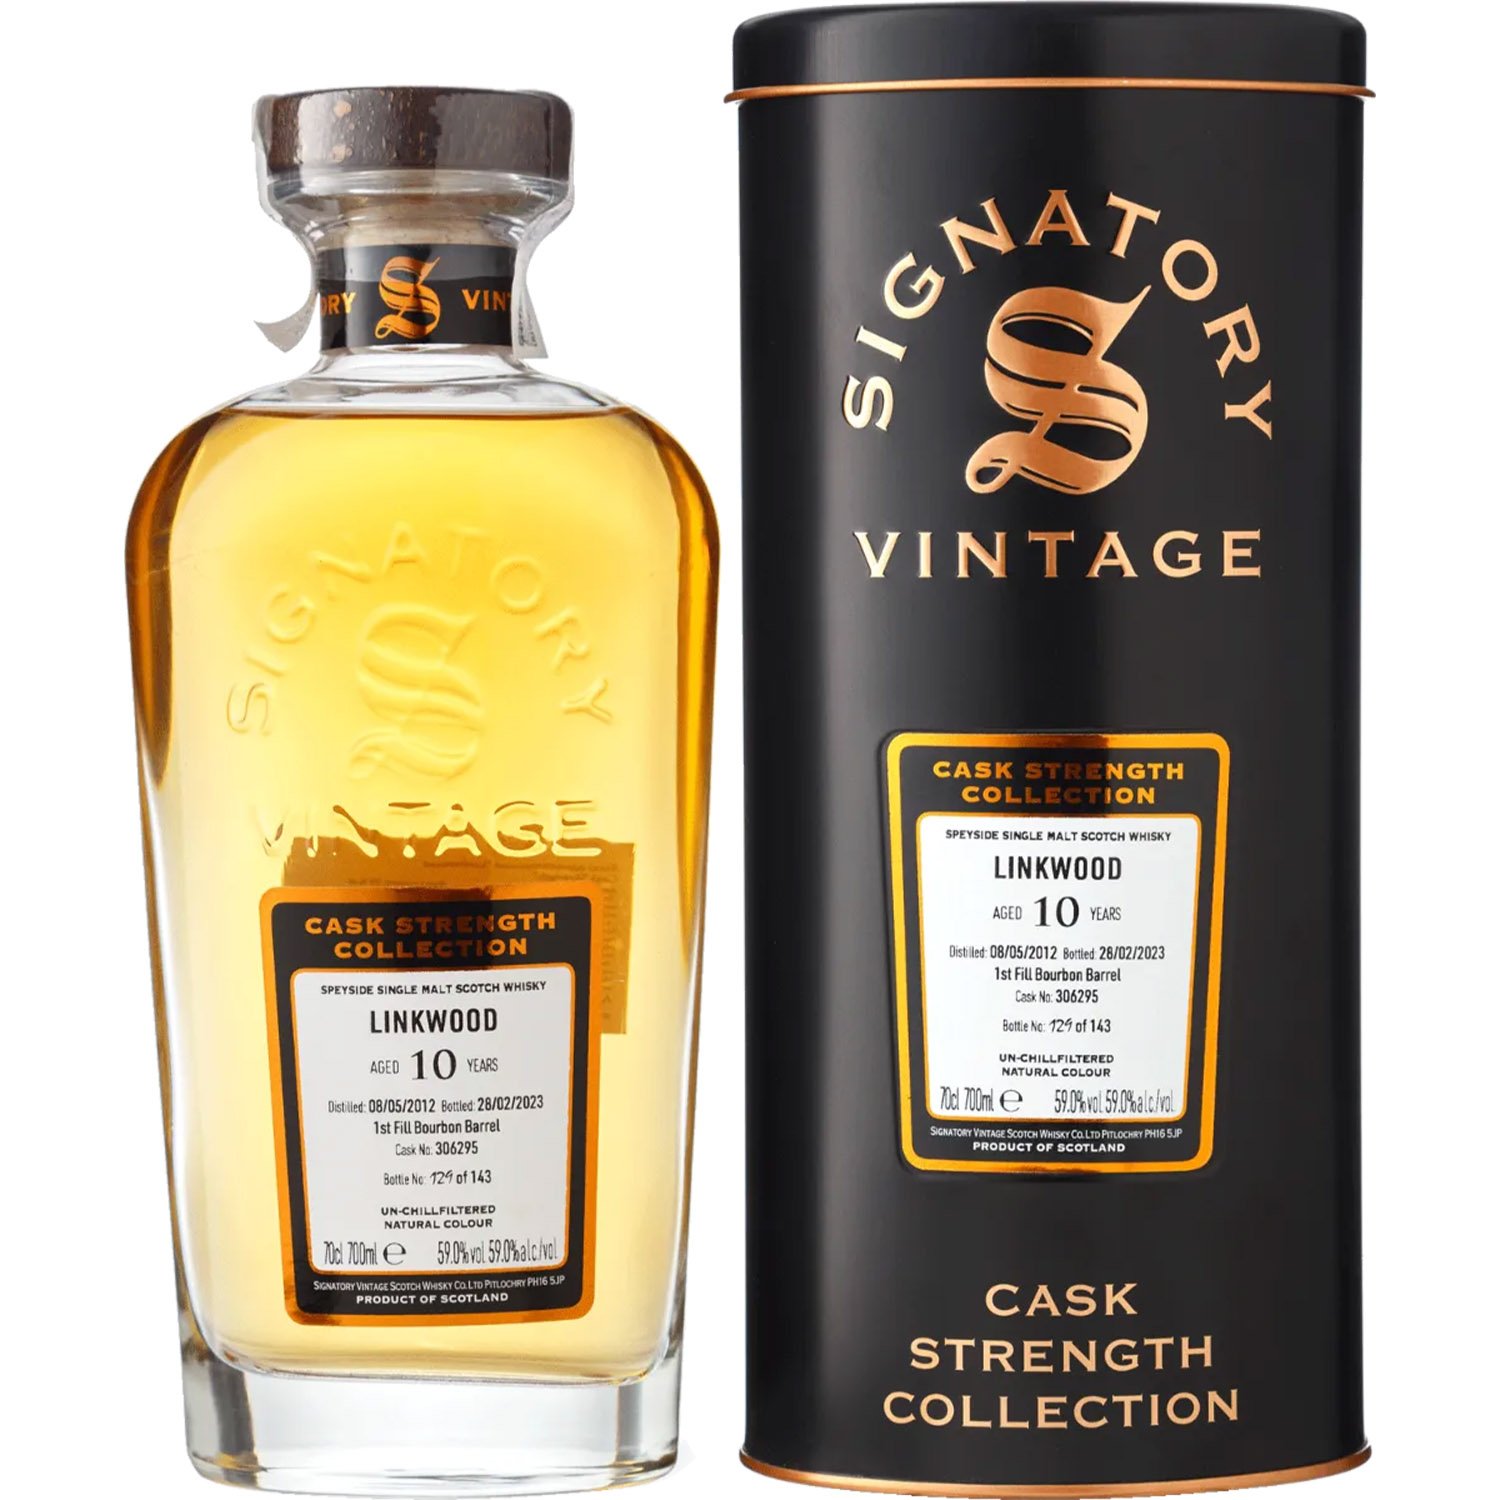 Виски Signatory Vintage Linkwood 10 yo Cask Strength 2012 Single Malt Scotch Whisky 59% 0.7 л в подарочной коробке - фото 1